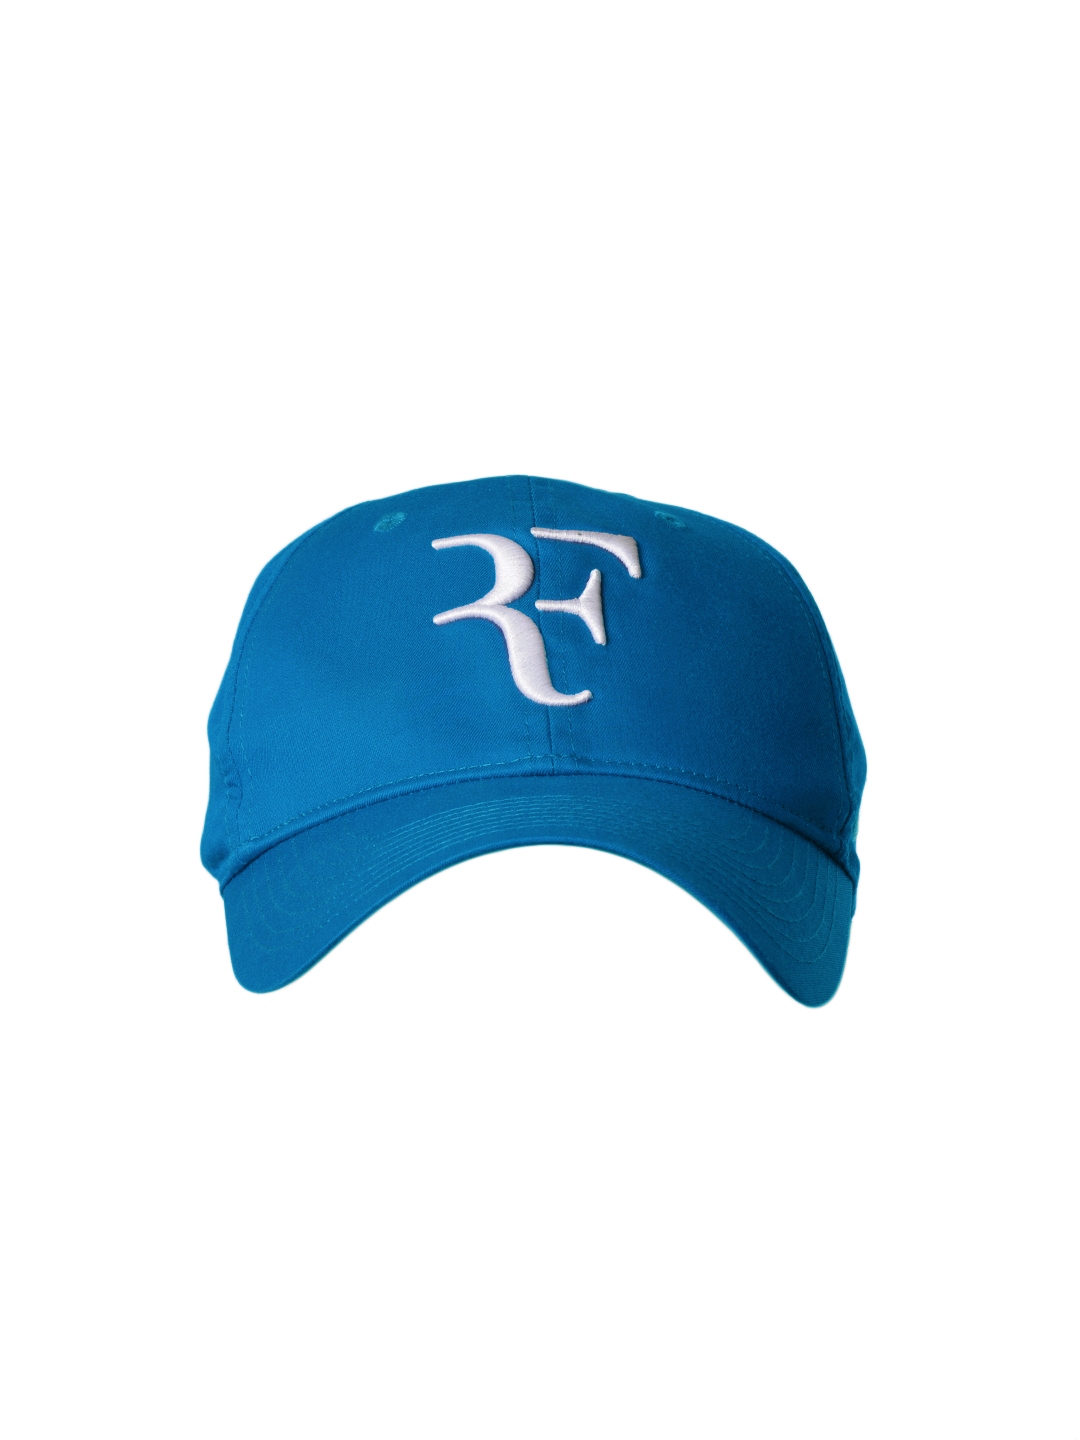 Buy Nike Unisex Federer Blue Cap - Caps 